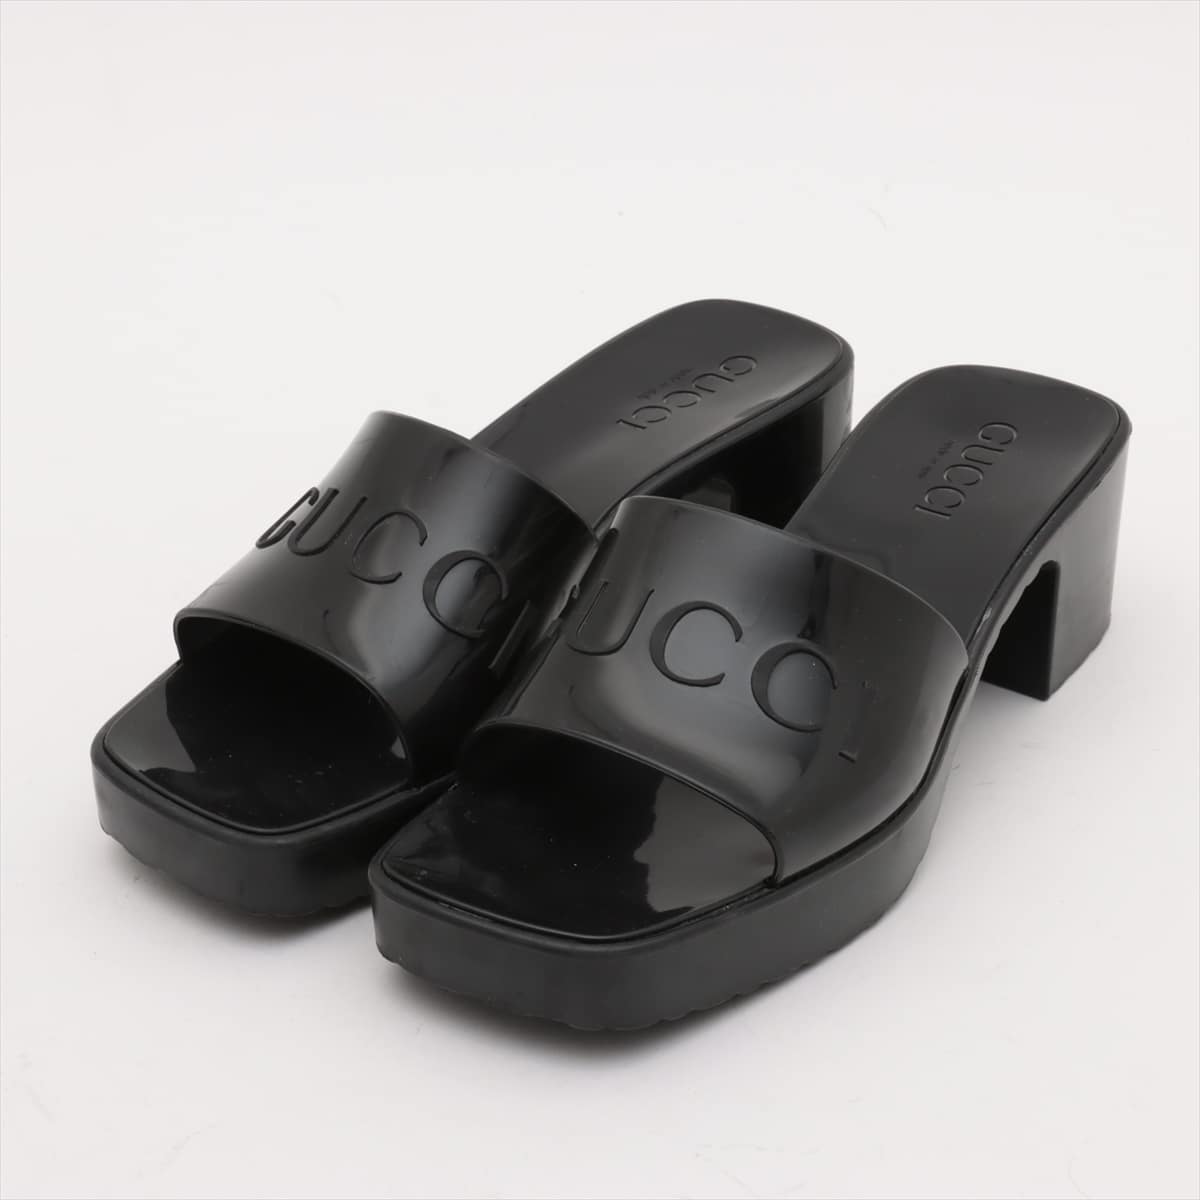 Gucci Rubber Sandals 35 Ladies' Black 624730 Slide sandals